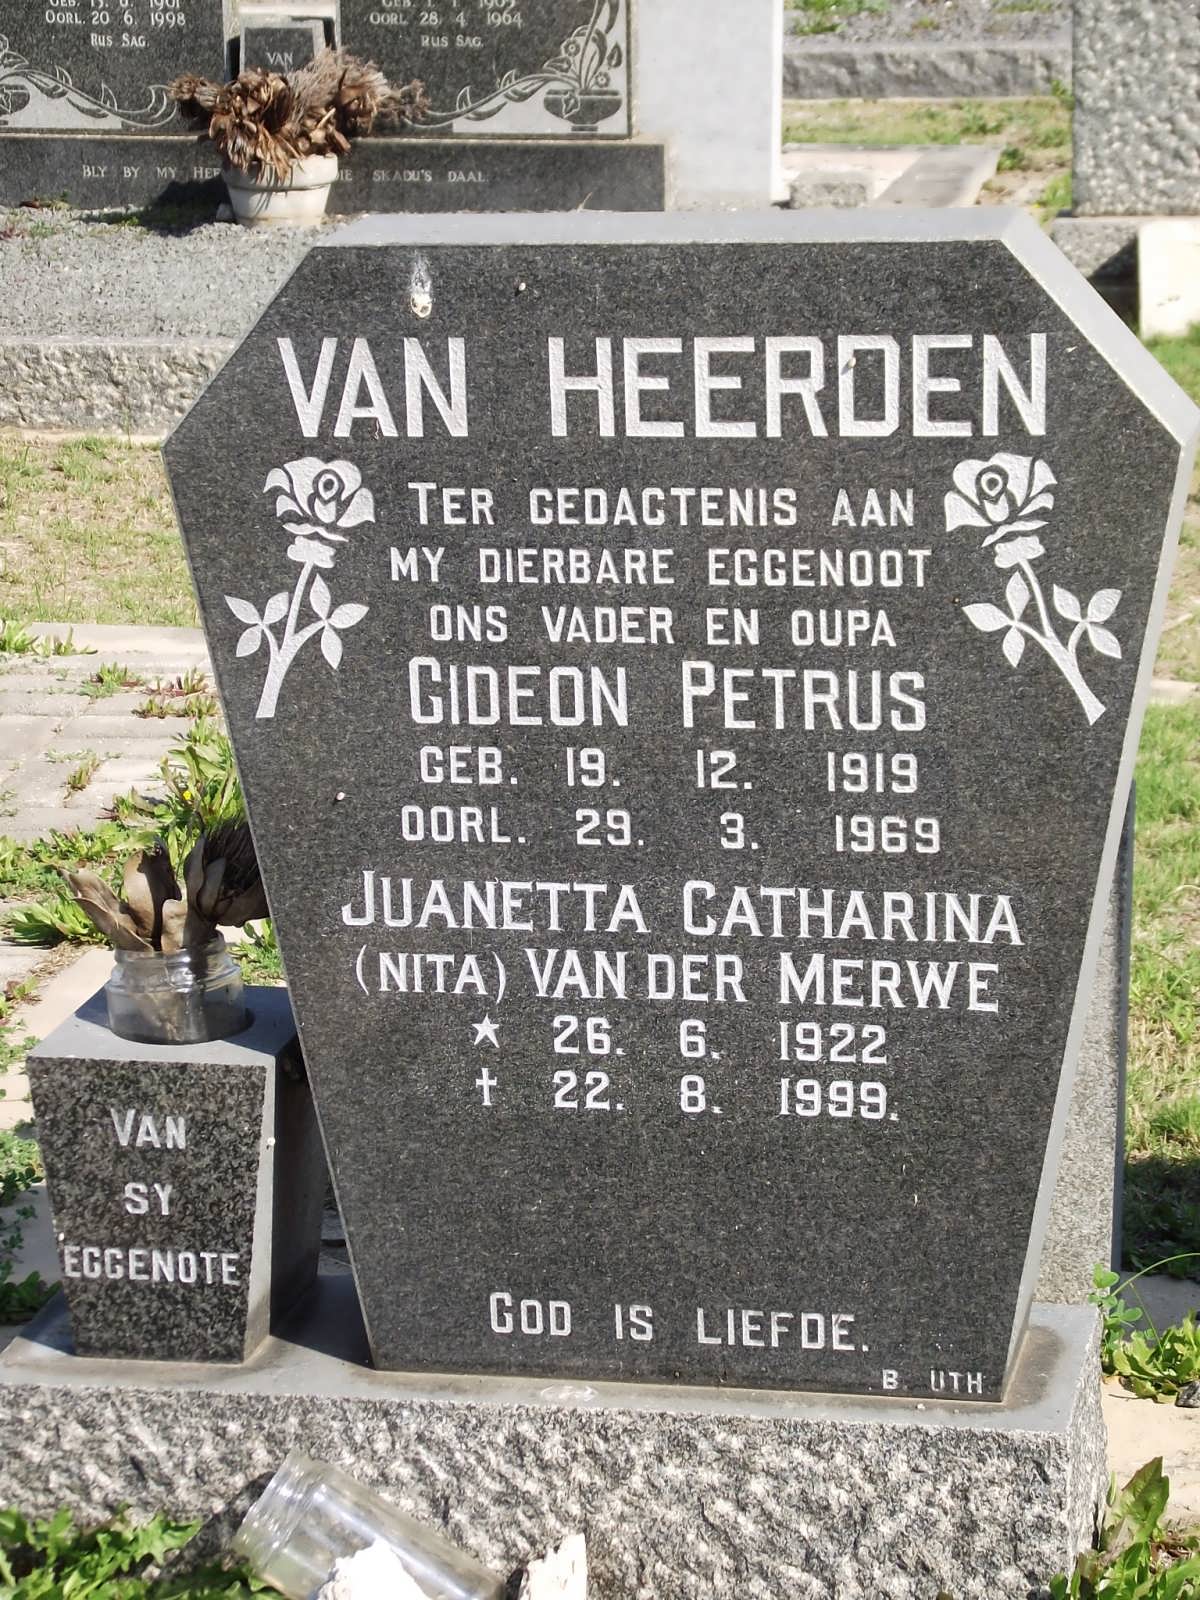 HEERDEN Gideon Petrus, van 1919-1969 :: MERWE Juanetta Catharina, van der 1922-1999